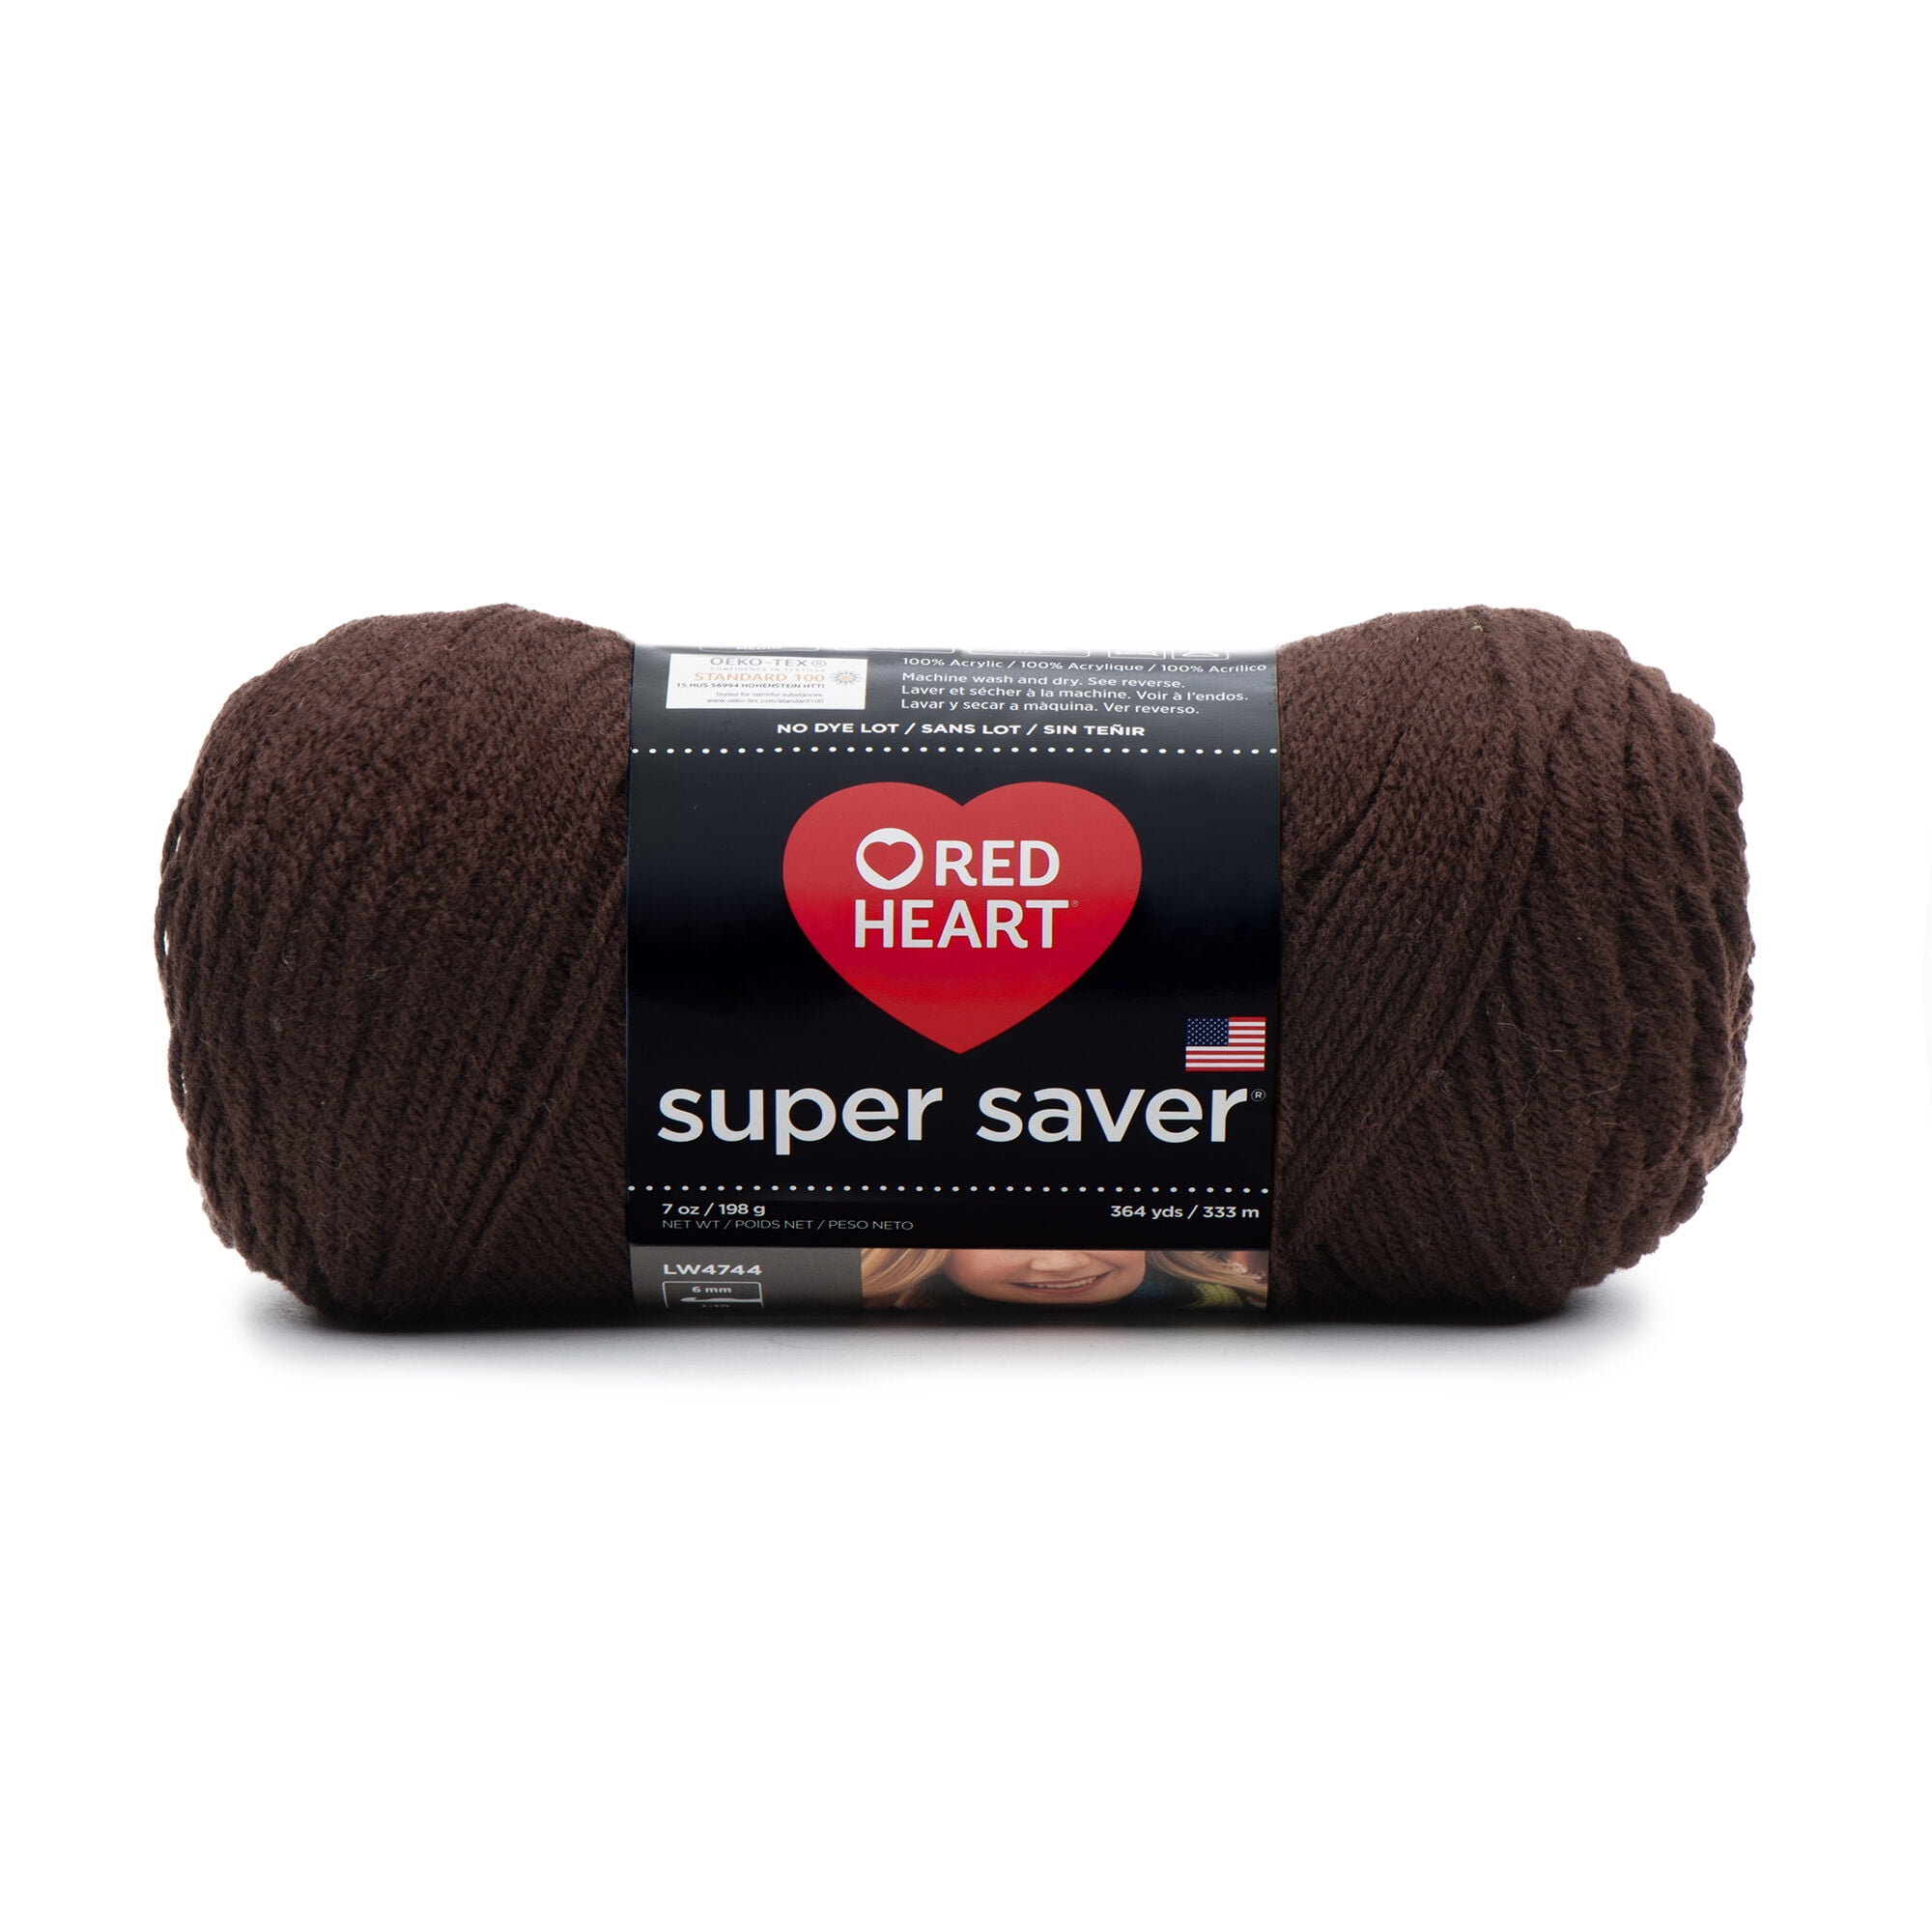 Red Heart Super Saver Yarn-Cafe Latte, 364 yds / 7 oz - Fred Meyer